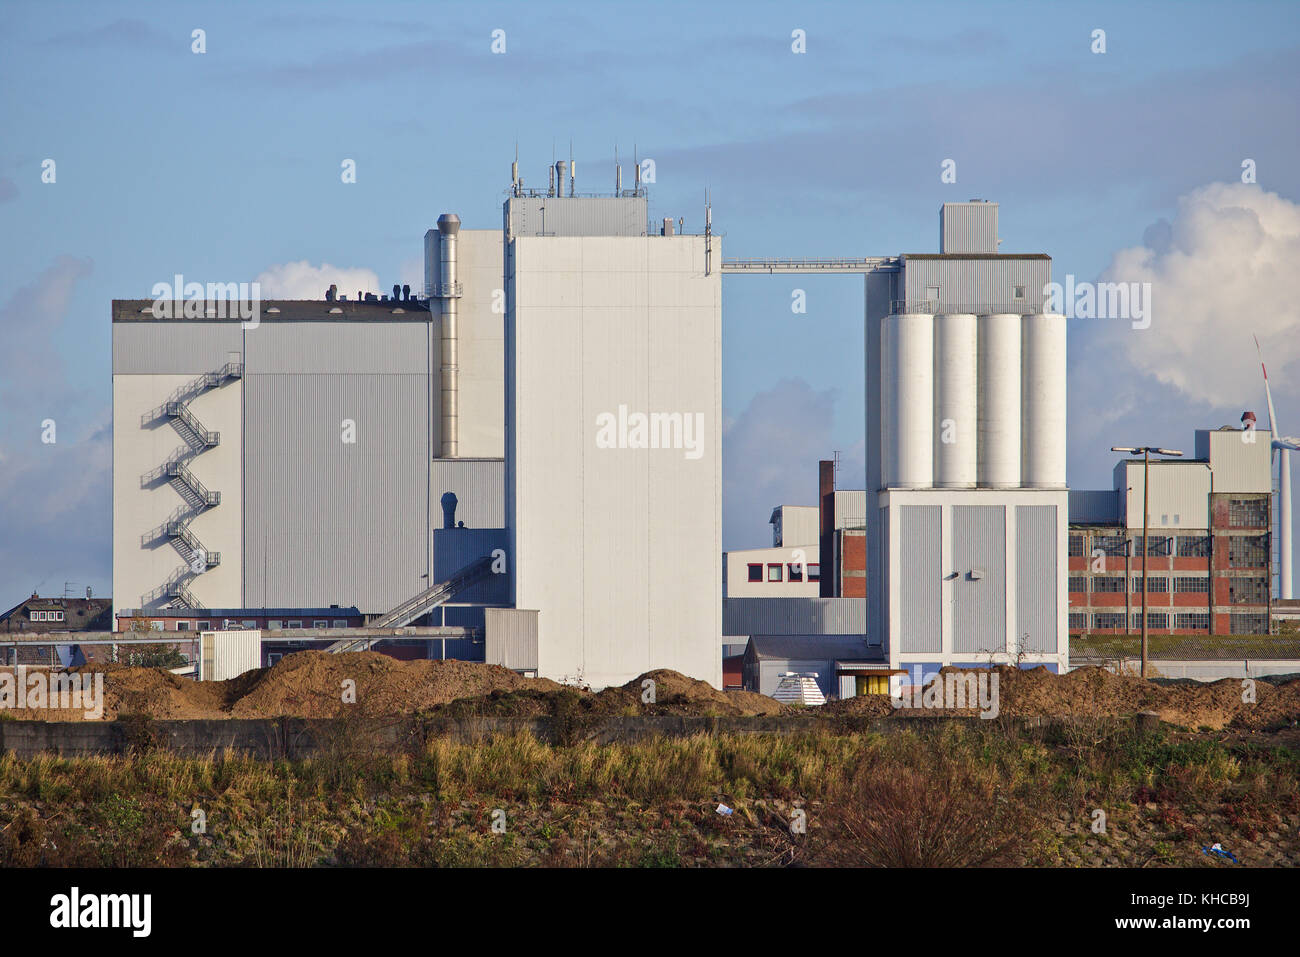 Enorme silo di grano con scale sul muro esterno e deposito edificio sullo sfondo Foto Stock